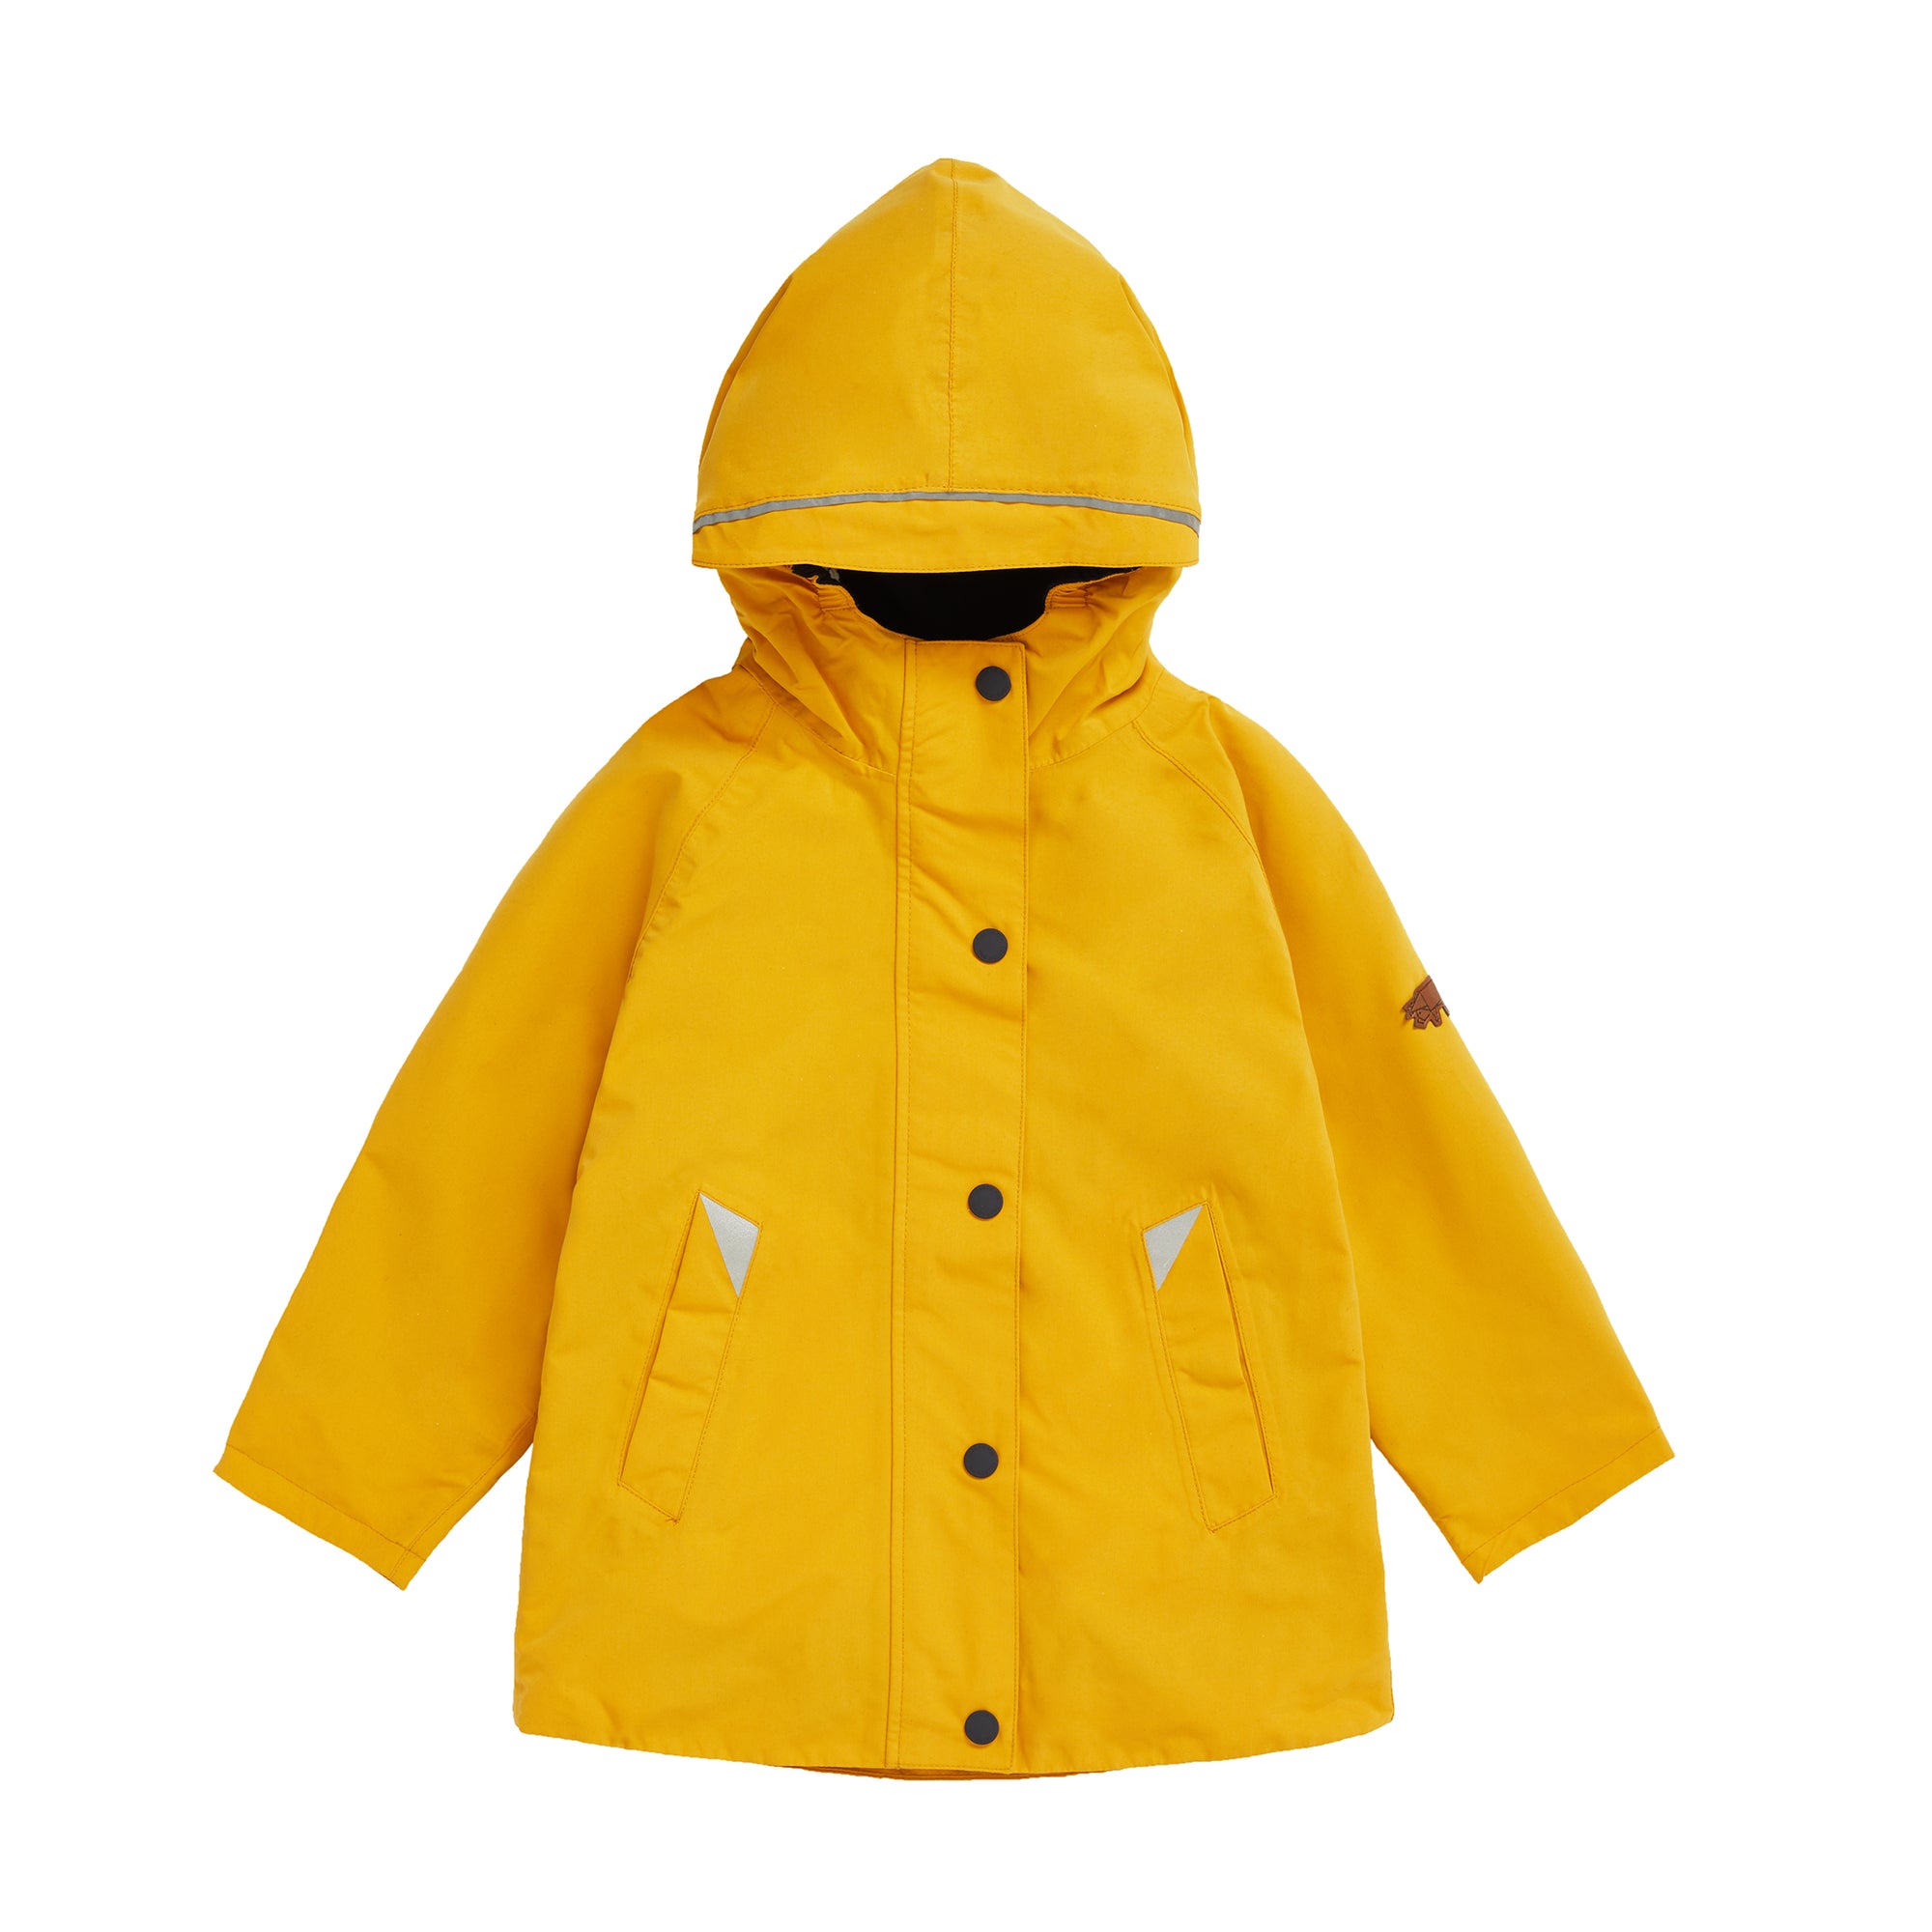 Toastie Kids Fisherman Yellow Waterproof Raincoat - 5-6 yrs